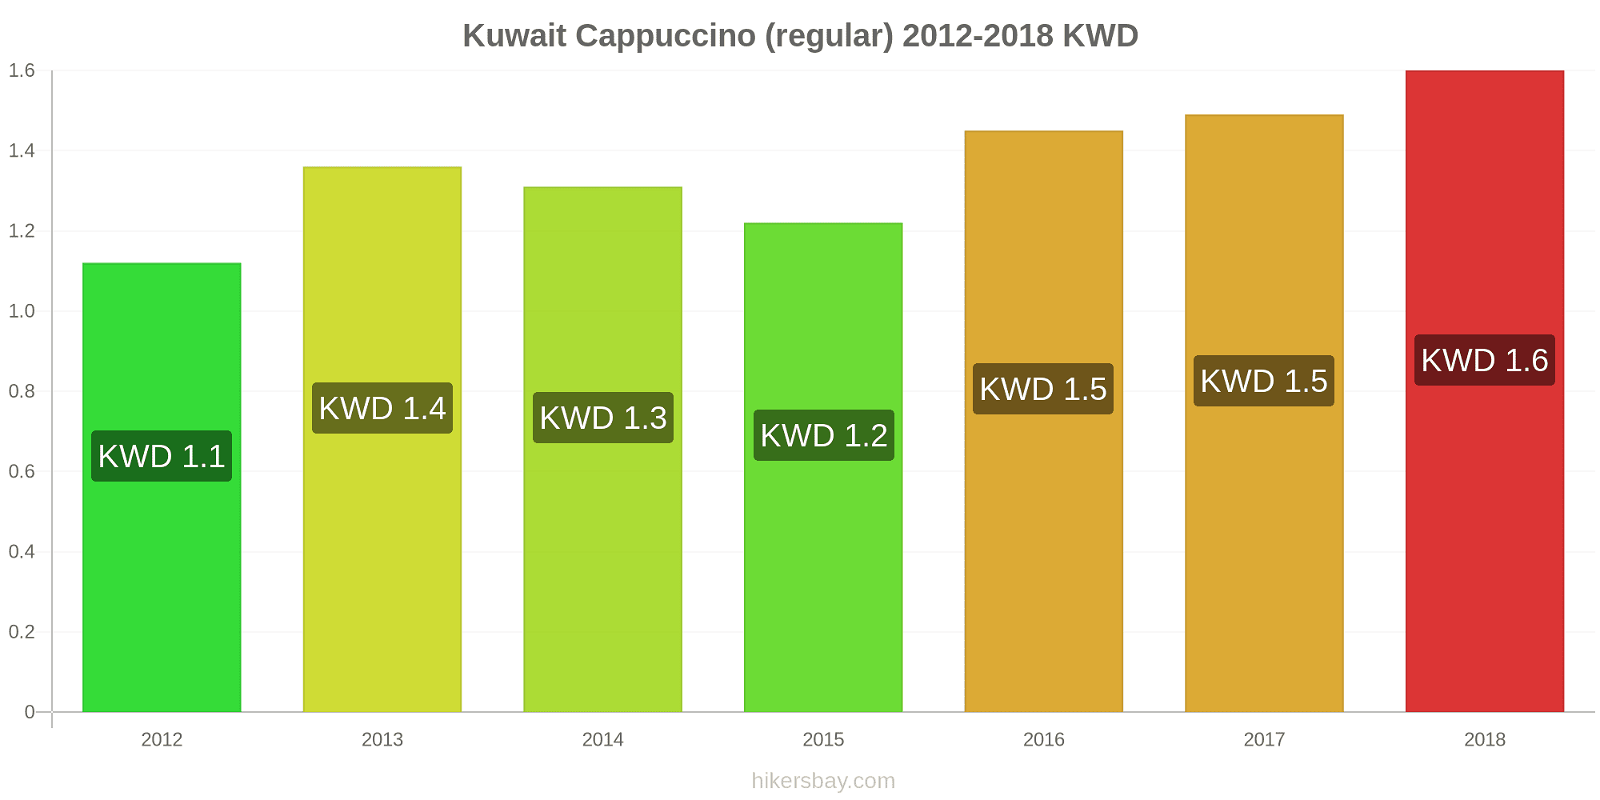 Kuwait price changes Cappuccino hikersbay.com